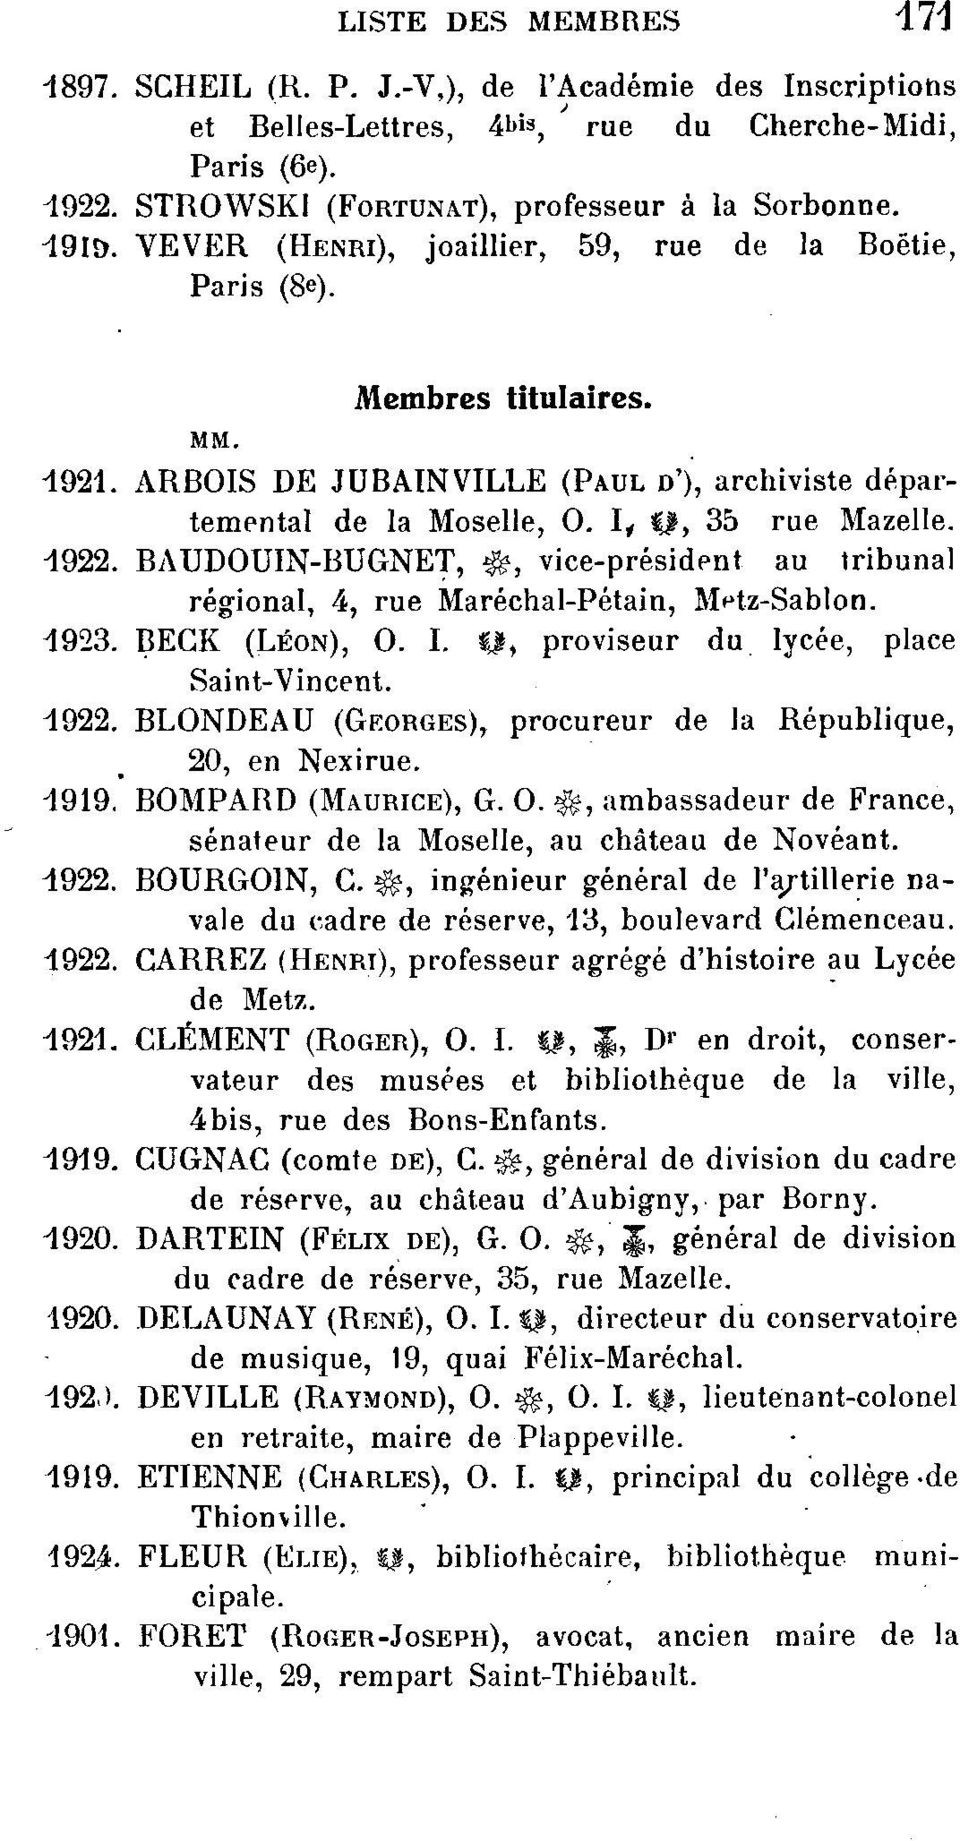 BAUDOUIN-BUGNET, vice-président au tribunal régional, 4, rue Maréchal-Pétain, M^tz-Sablon. 4923. BECK (LÉON), O. I. Il, proviseur du lycée, place Saint-Vincent. 4922.